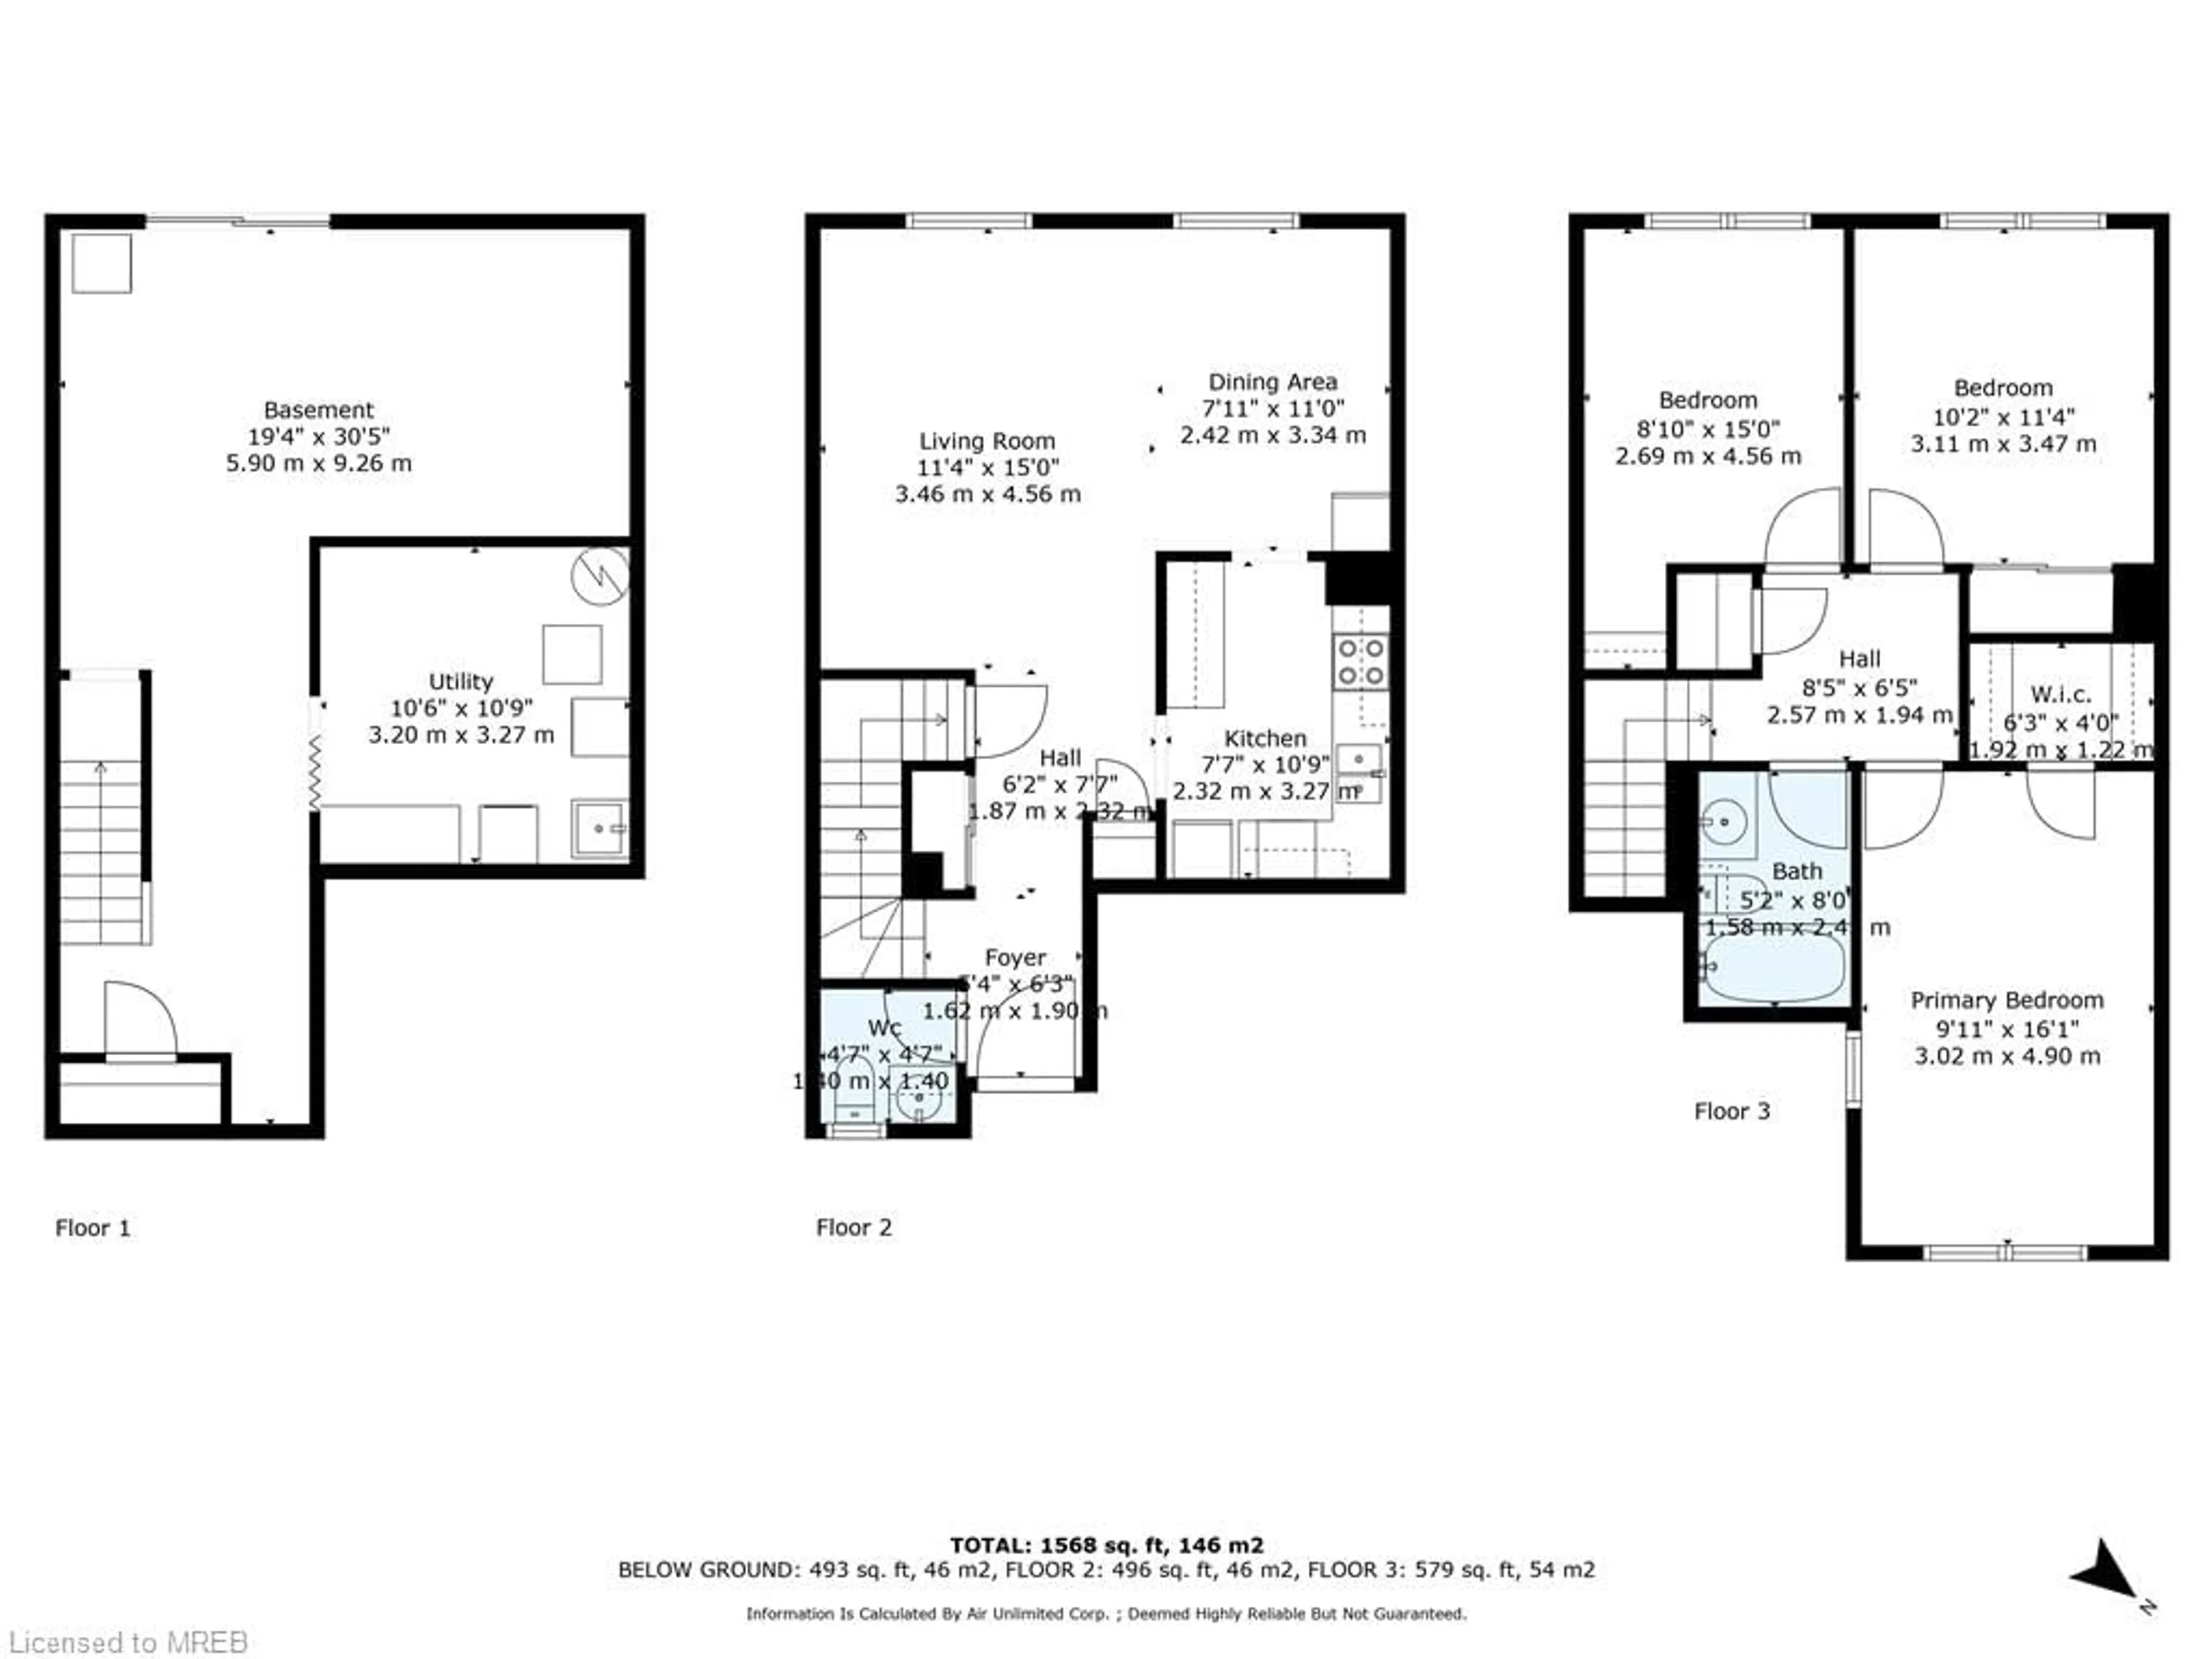 Floor plan for 89 Carleton Pl #89, Brampton Ontario L6T 3Z4